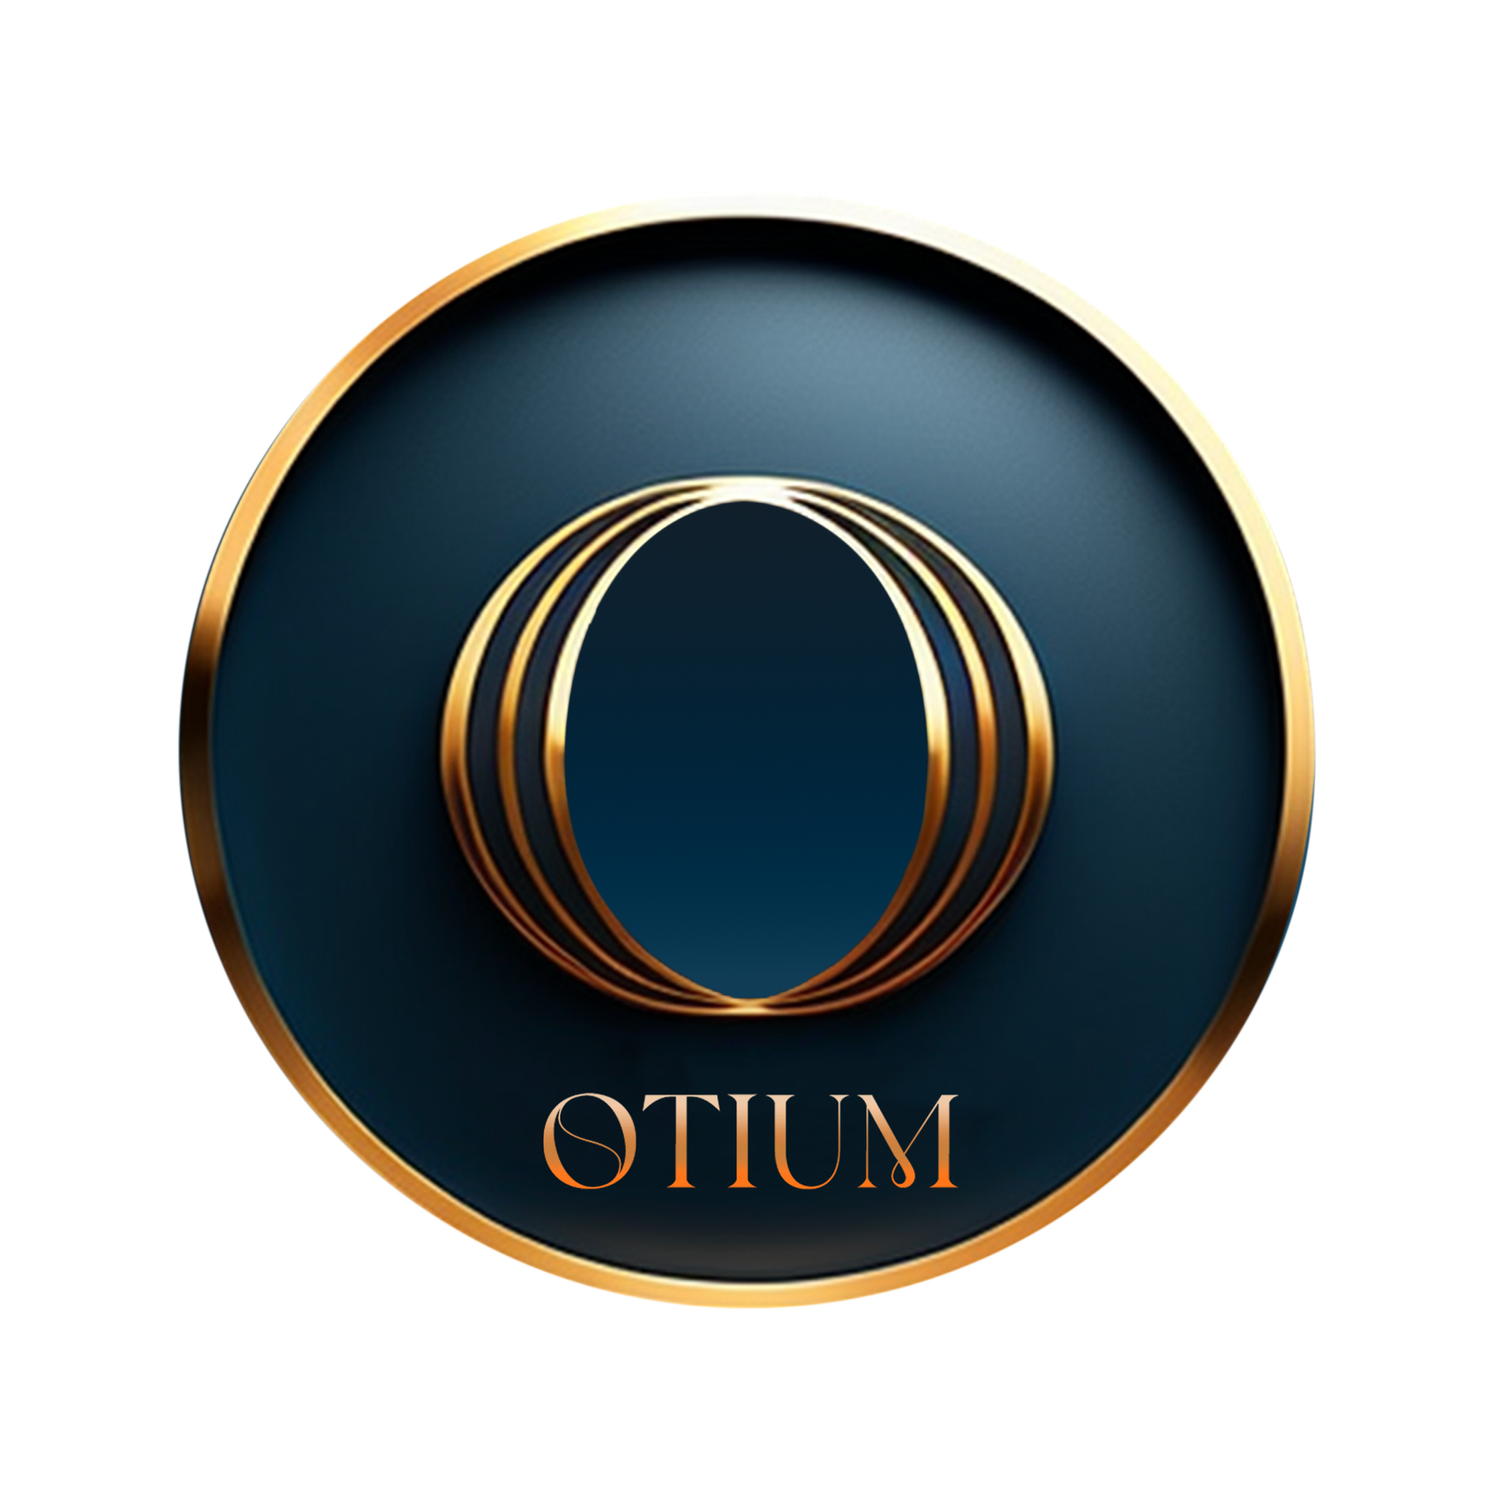 Otium Luxury Estate Management